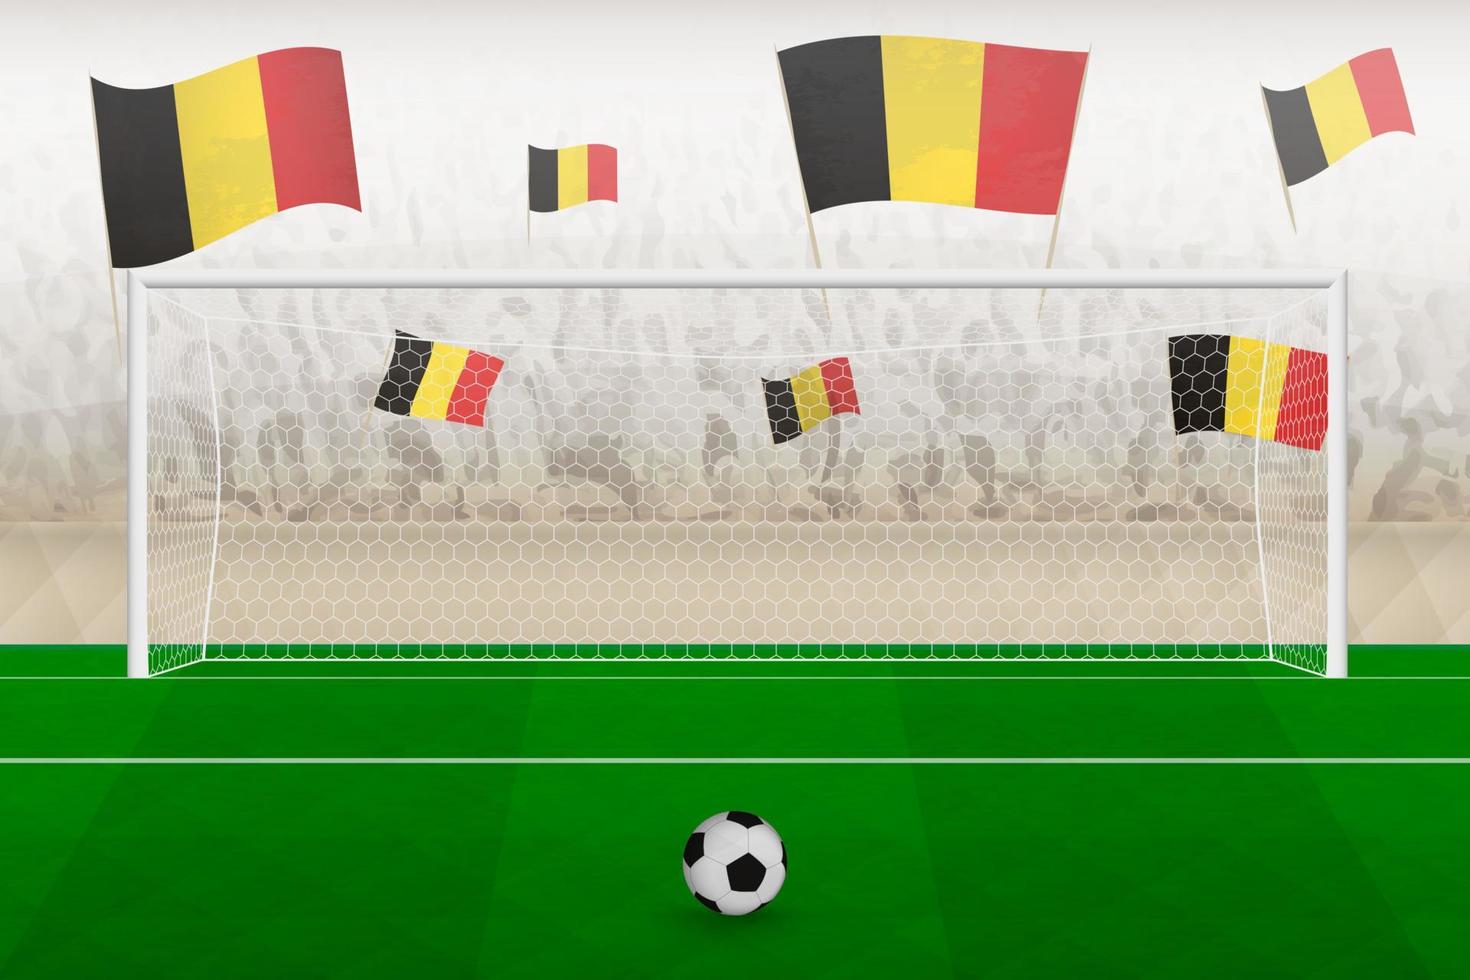 hinchas del equipo de fútbol de bélgica con banderas de bélgica animando en el estadio, concepto de tiro penal en un partido de fútbol. vector